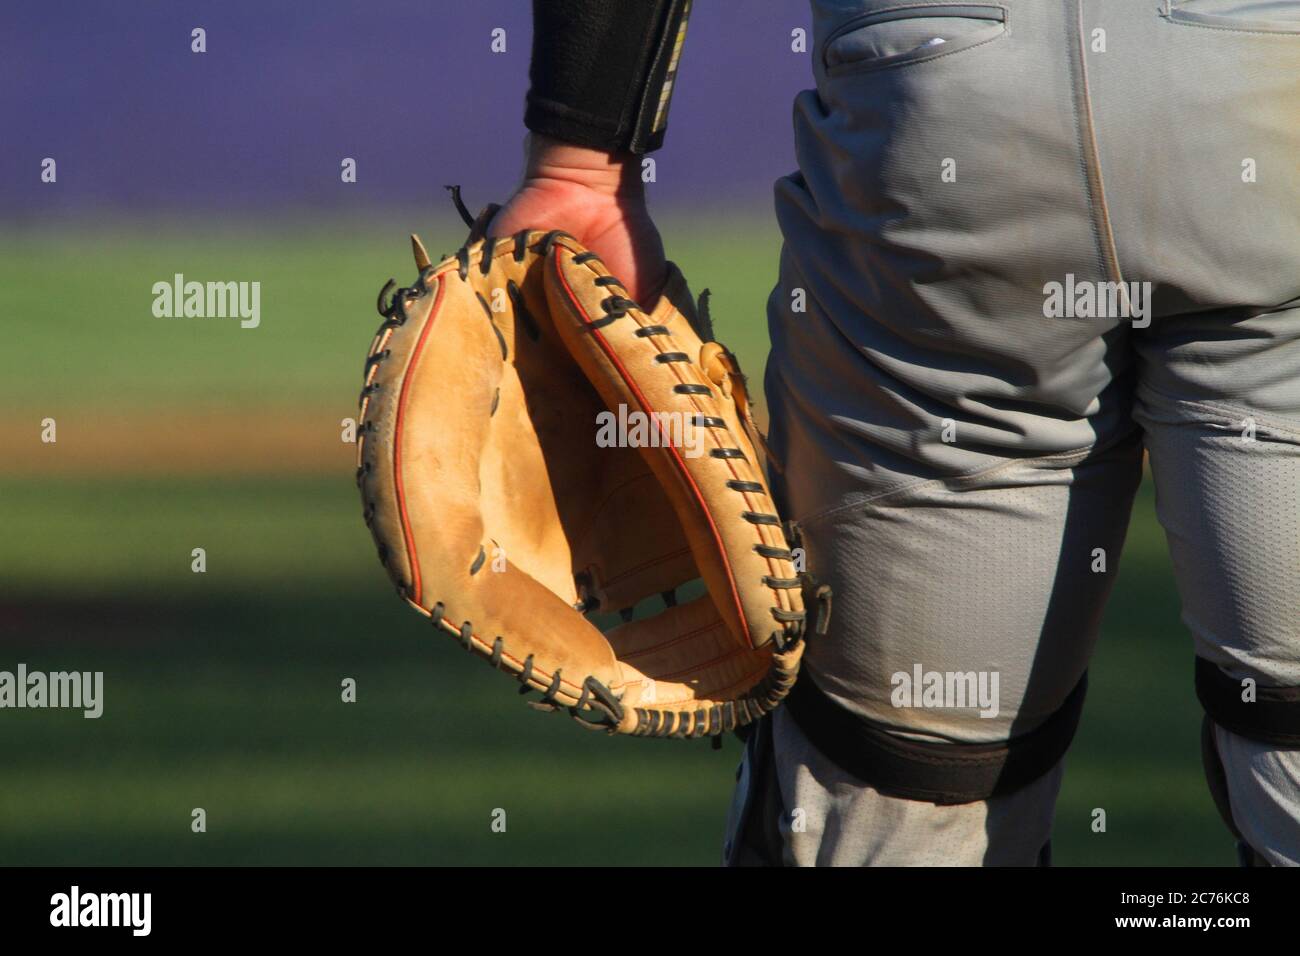 Un primo piano da dietro di un catcher da baseball pronto per l'azione. Foto Stock